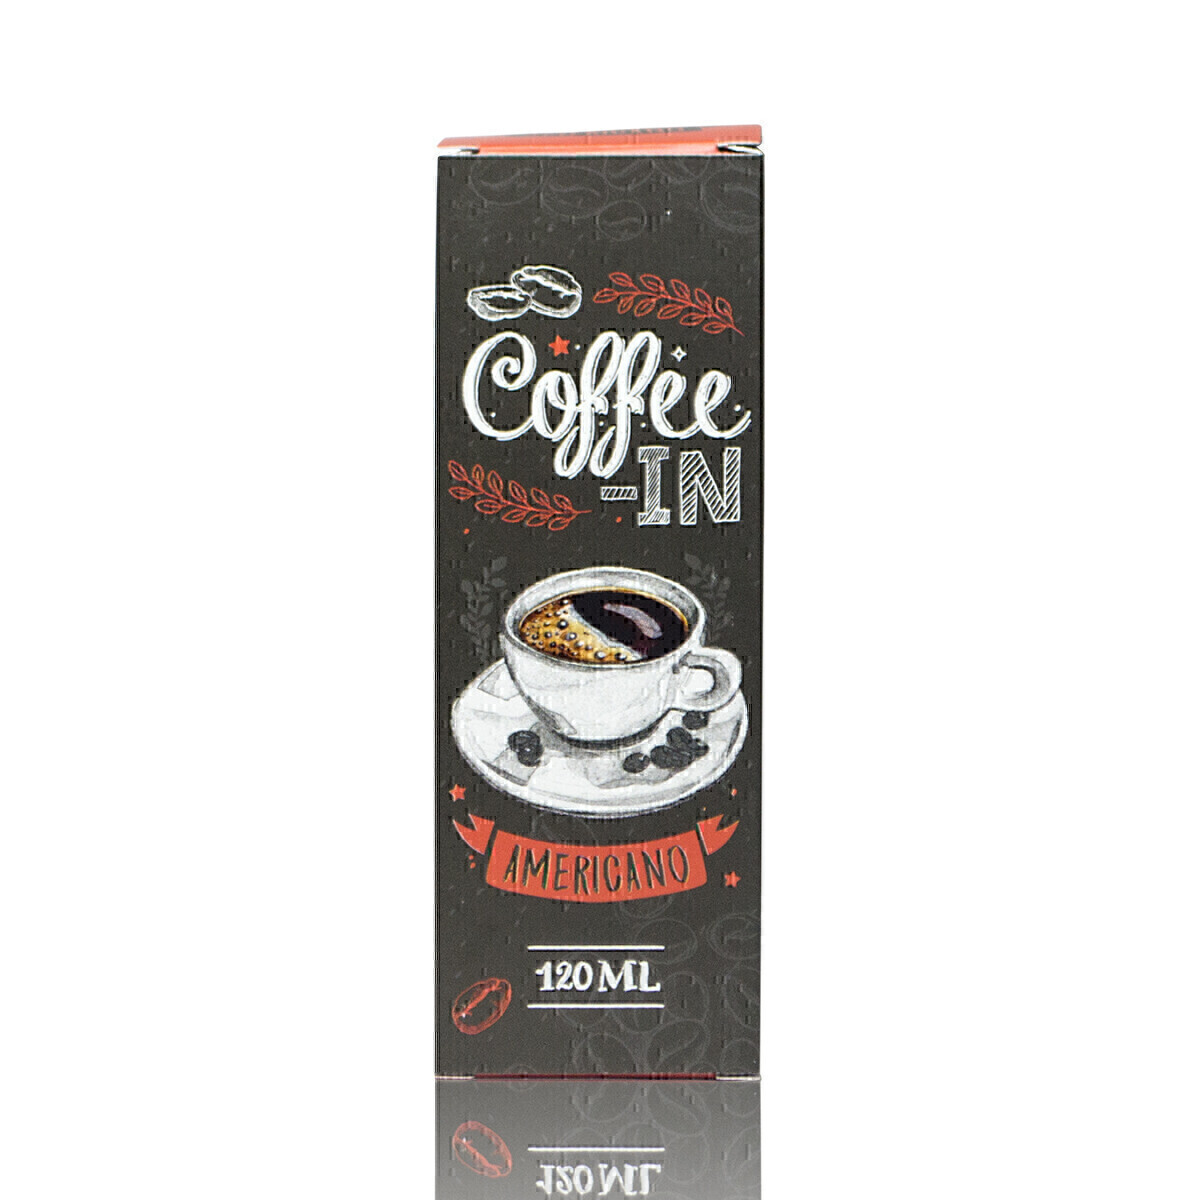 COFFEE-IN SALT: AMERICANO 30ML 20MG